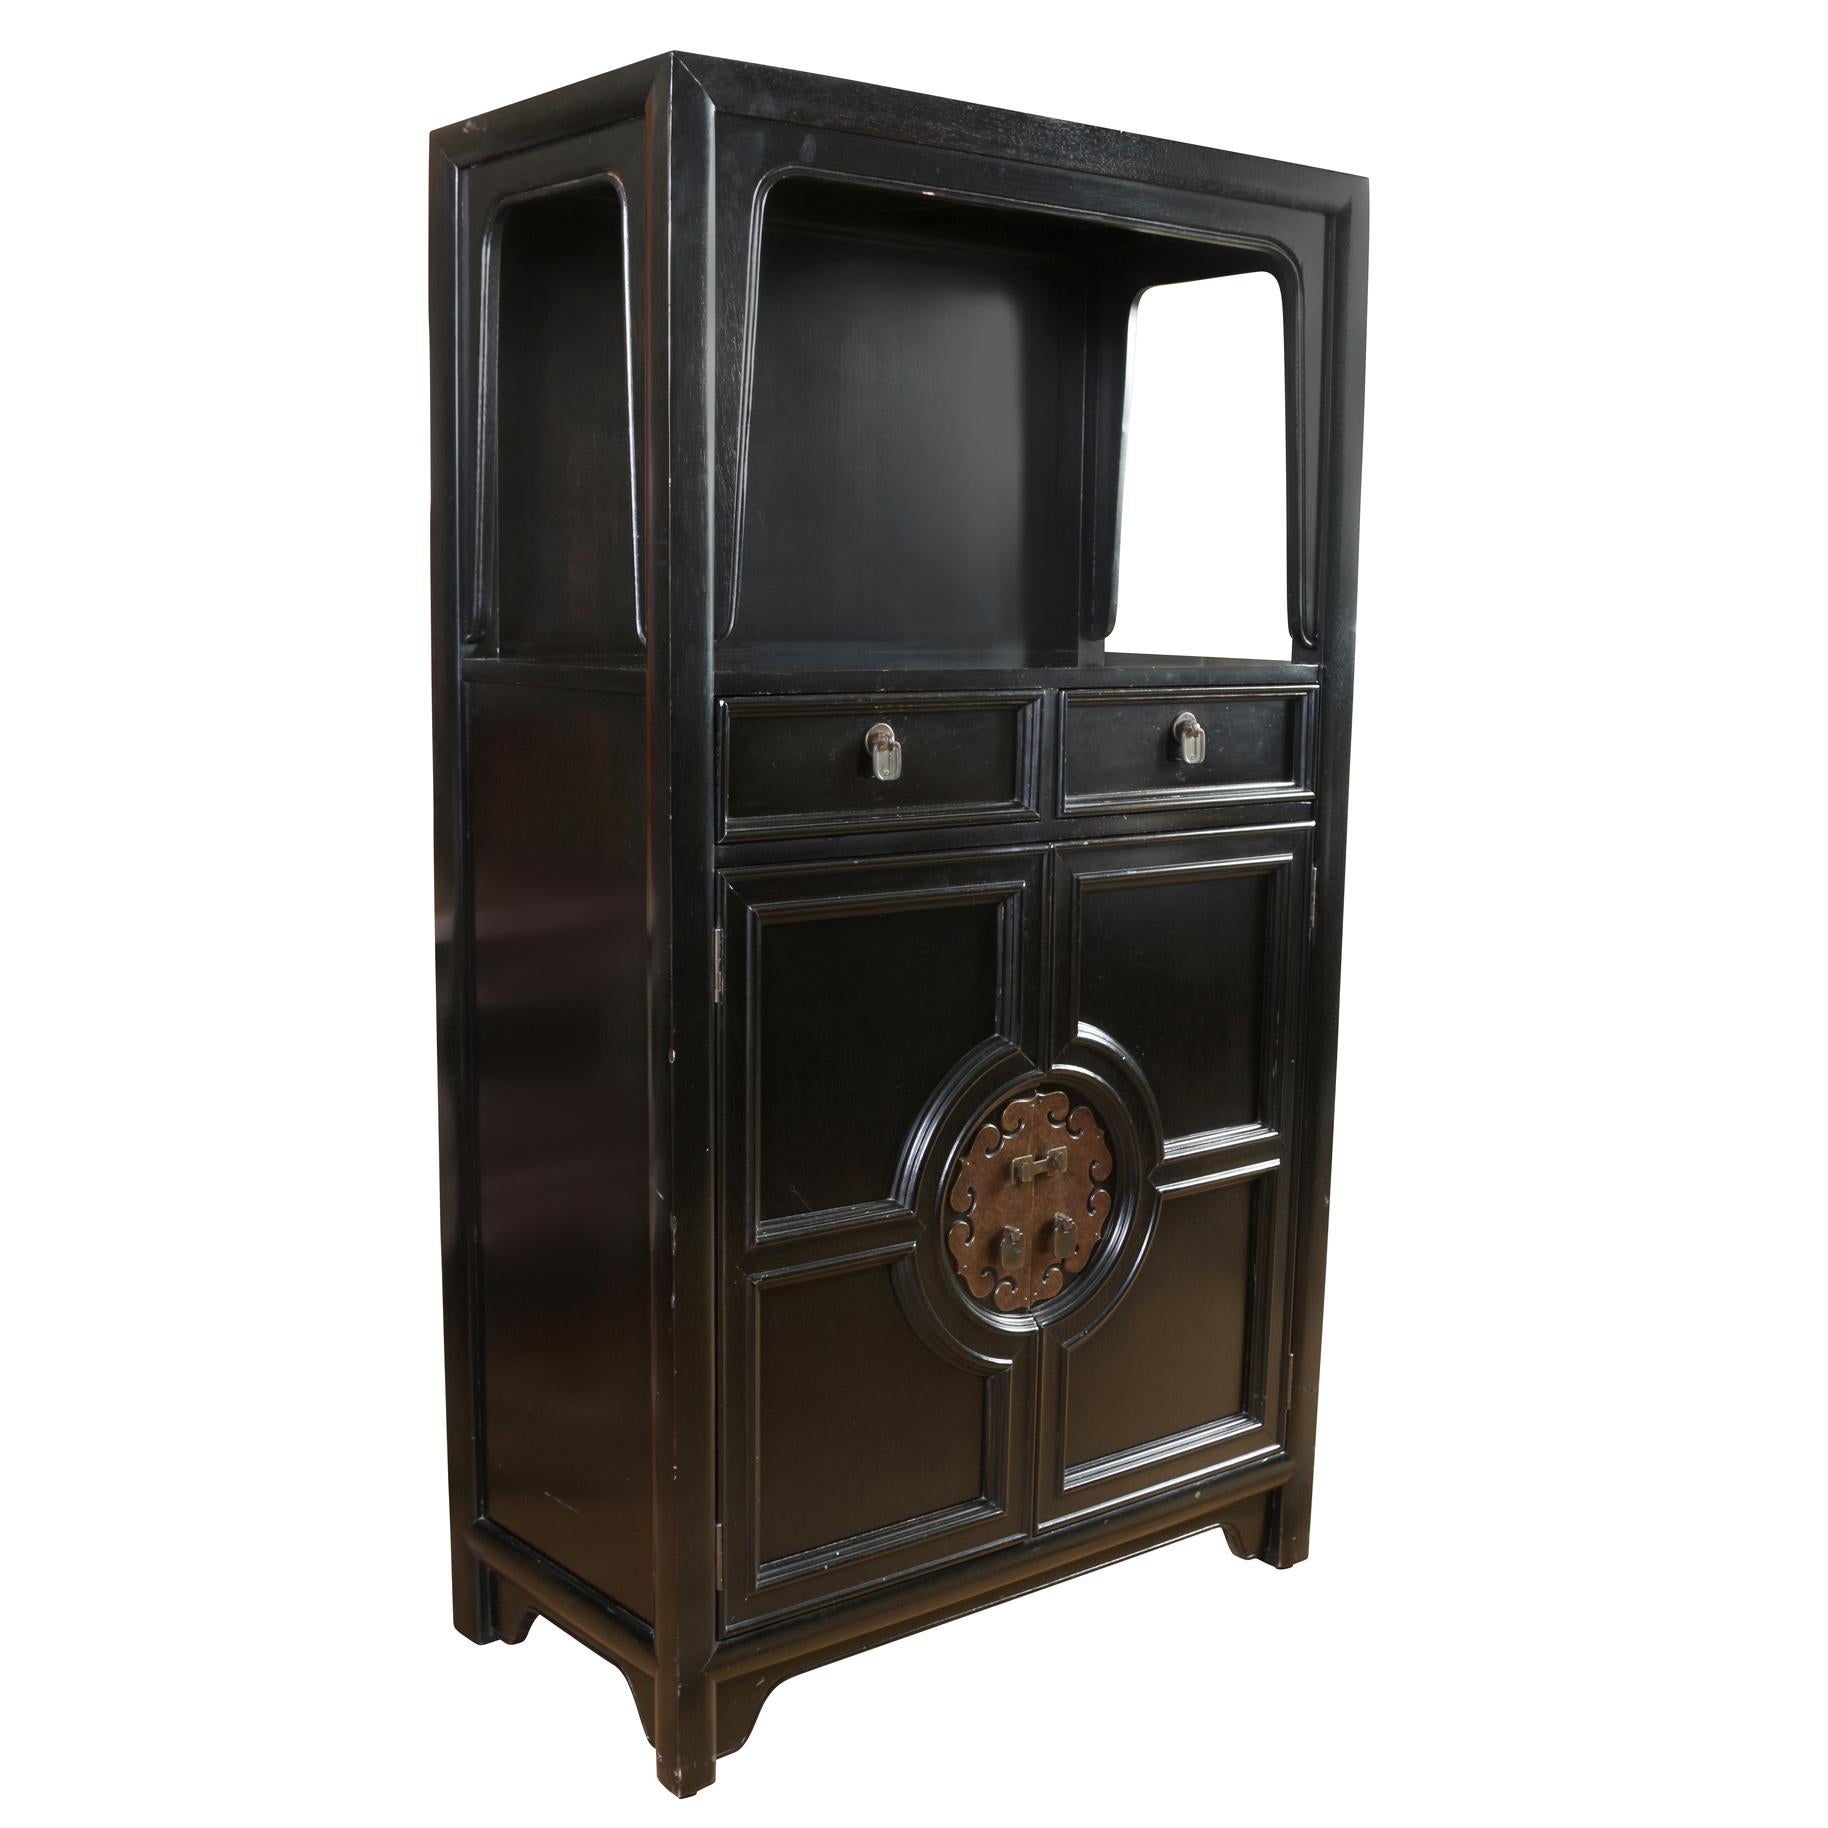 Une armoire en bois noir du milieu du siècle, de style James Mont, avec une quincaillerie vintage de style asiatique. Le meuble comporte une étagère ouverte en haut bordée d'un tablier en forme, deux petits tiroirs avec des ferrures en laiton, puis